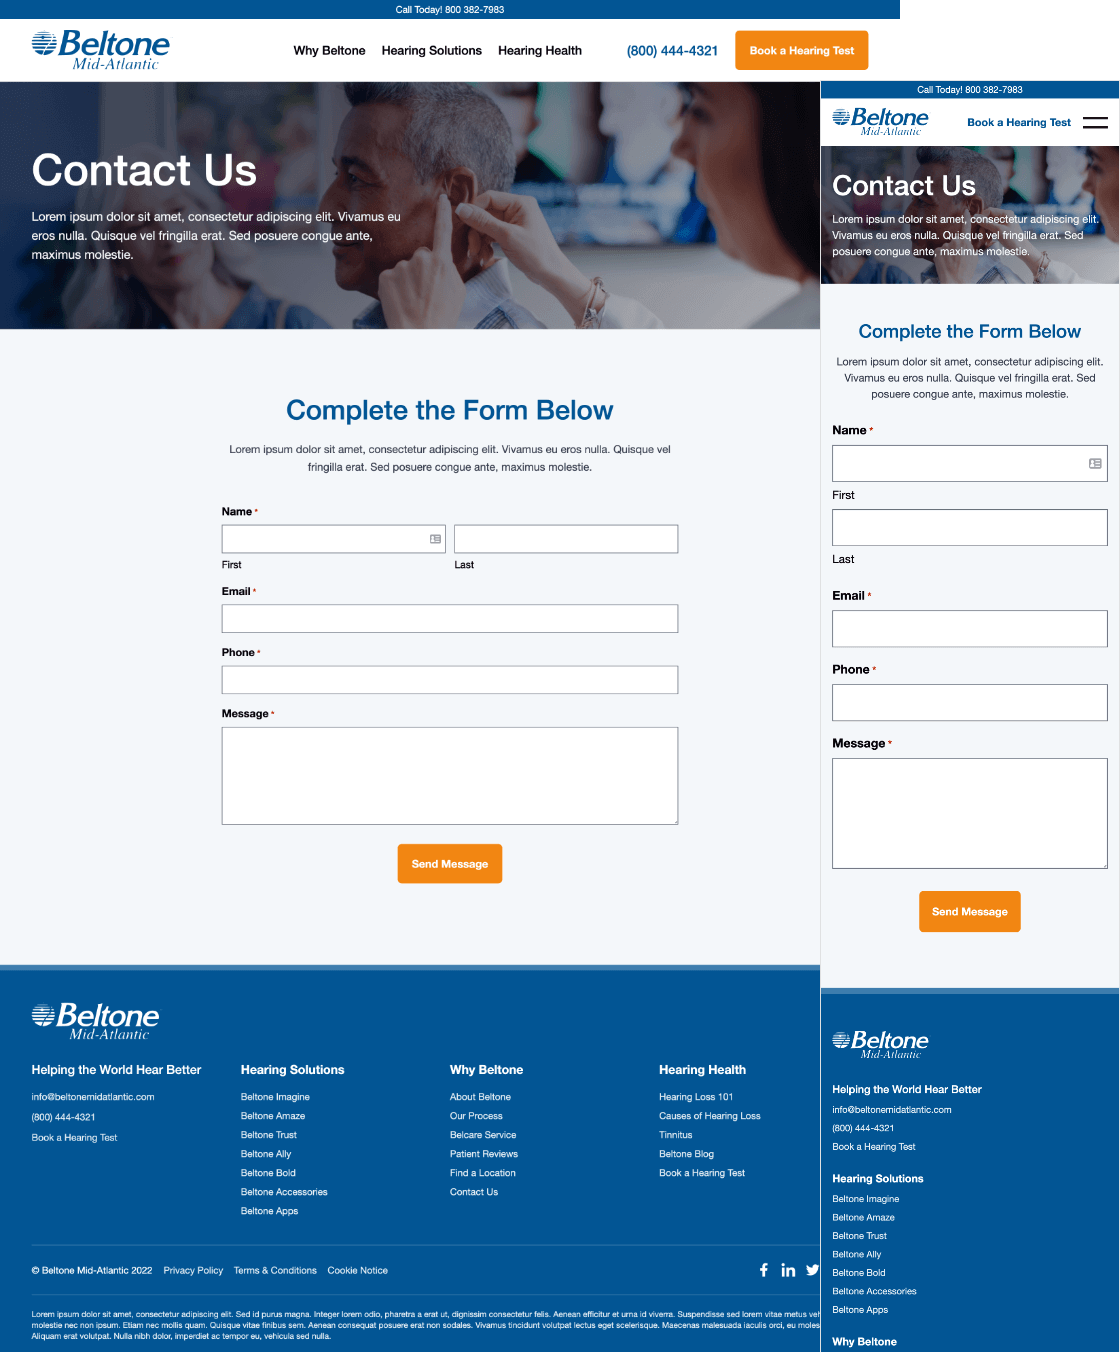 Beltone Website Design - Contact